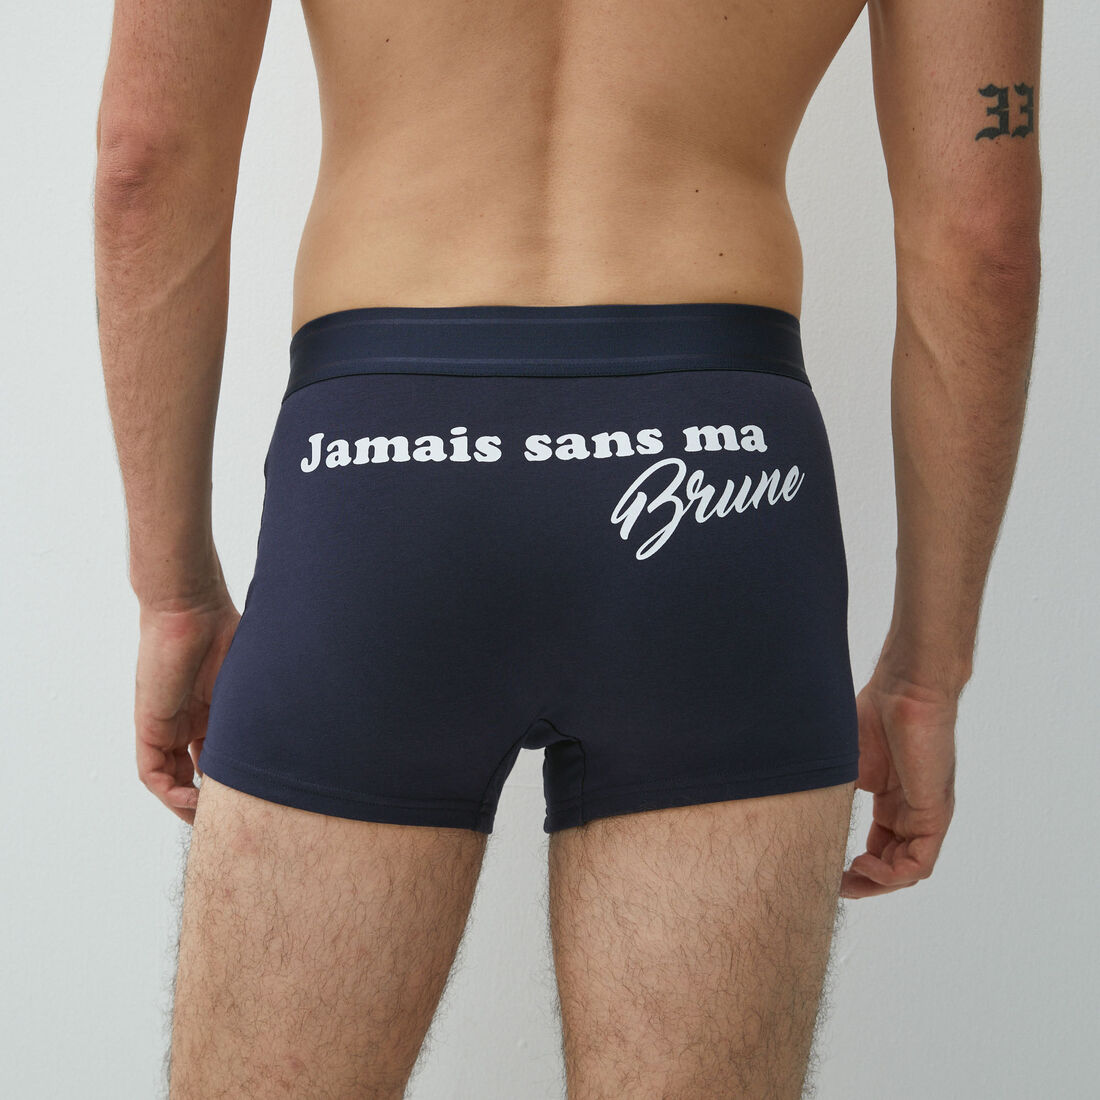 Boxers with "jamais sans ma brune" slogan;